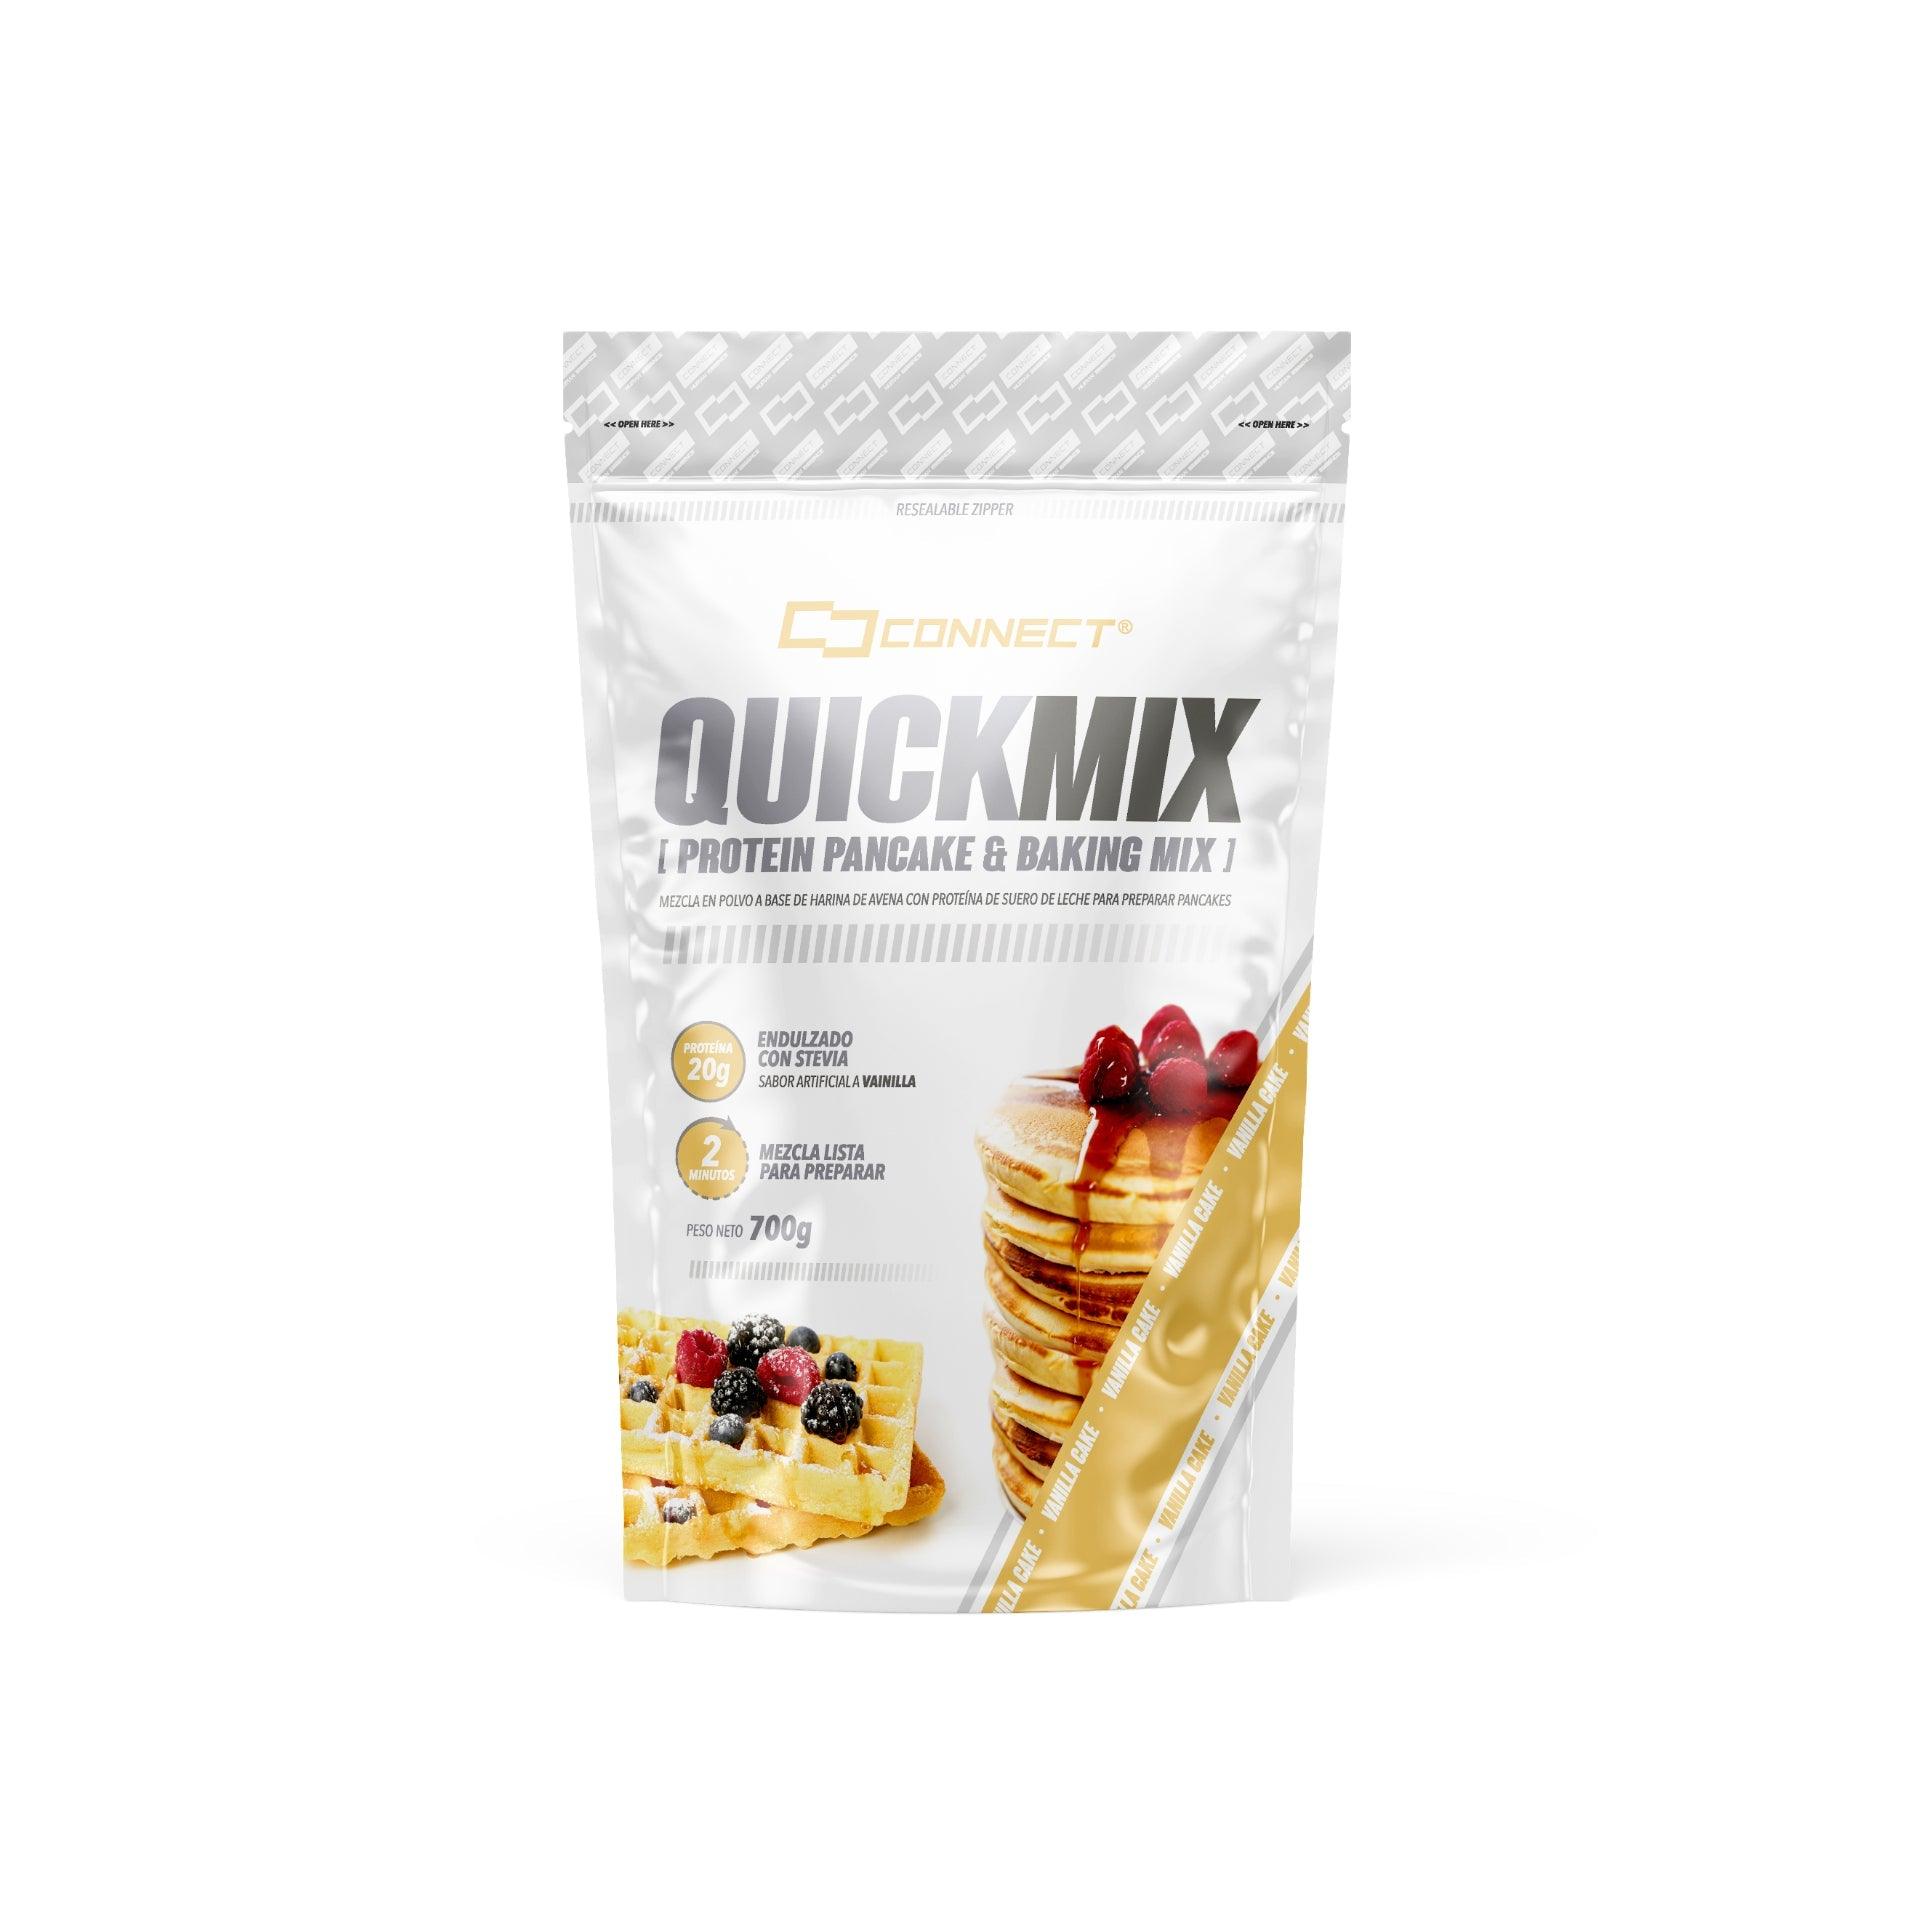 Quickmix | Connect - JH Nutrición